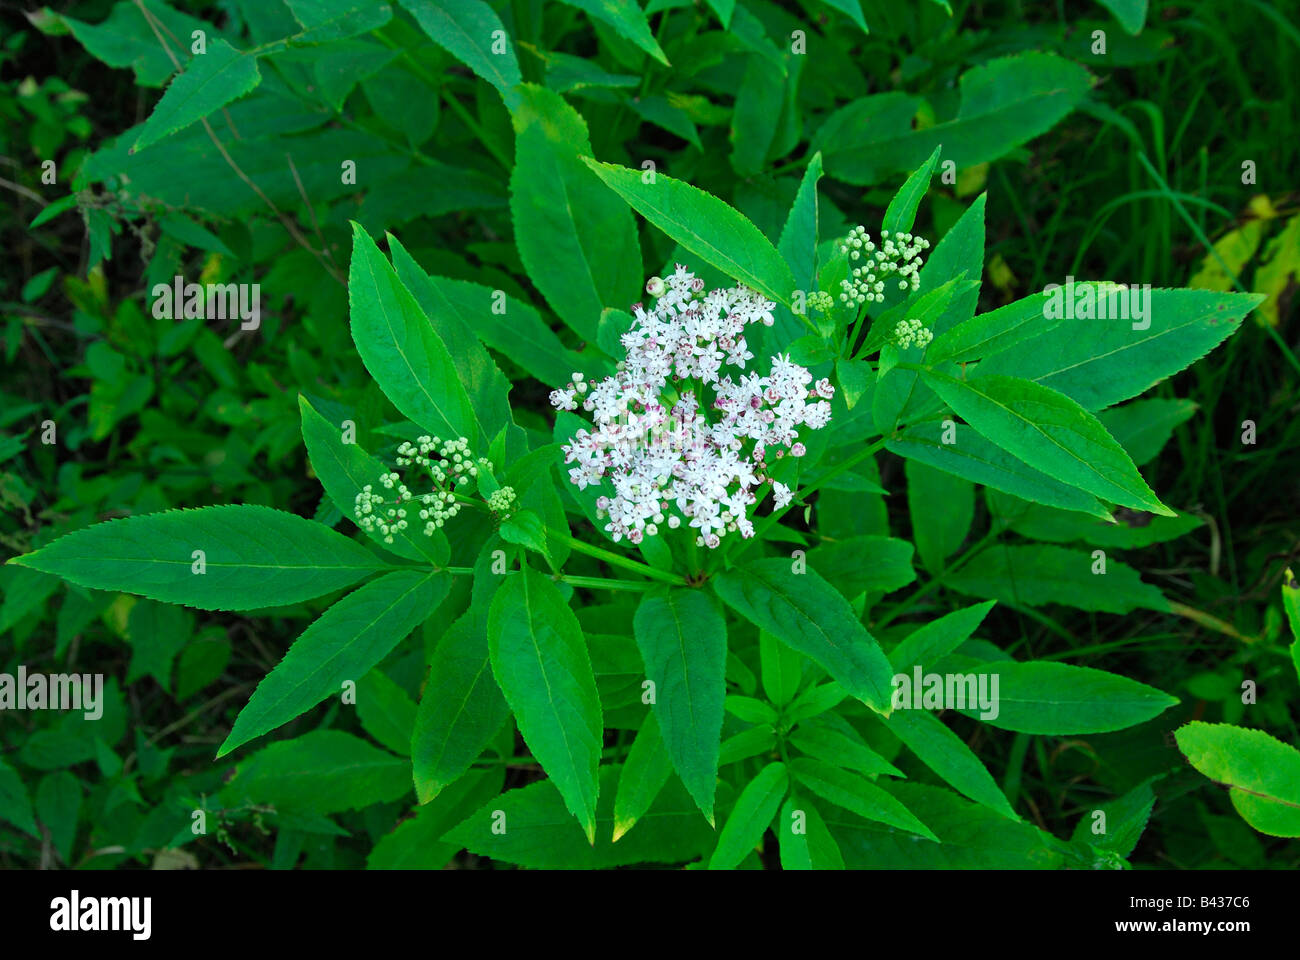 Danewort, Dwarf Elder, European Dwarf Elder ,Walewort (Sambucus ebulus) flowering Stock Photo